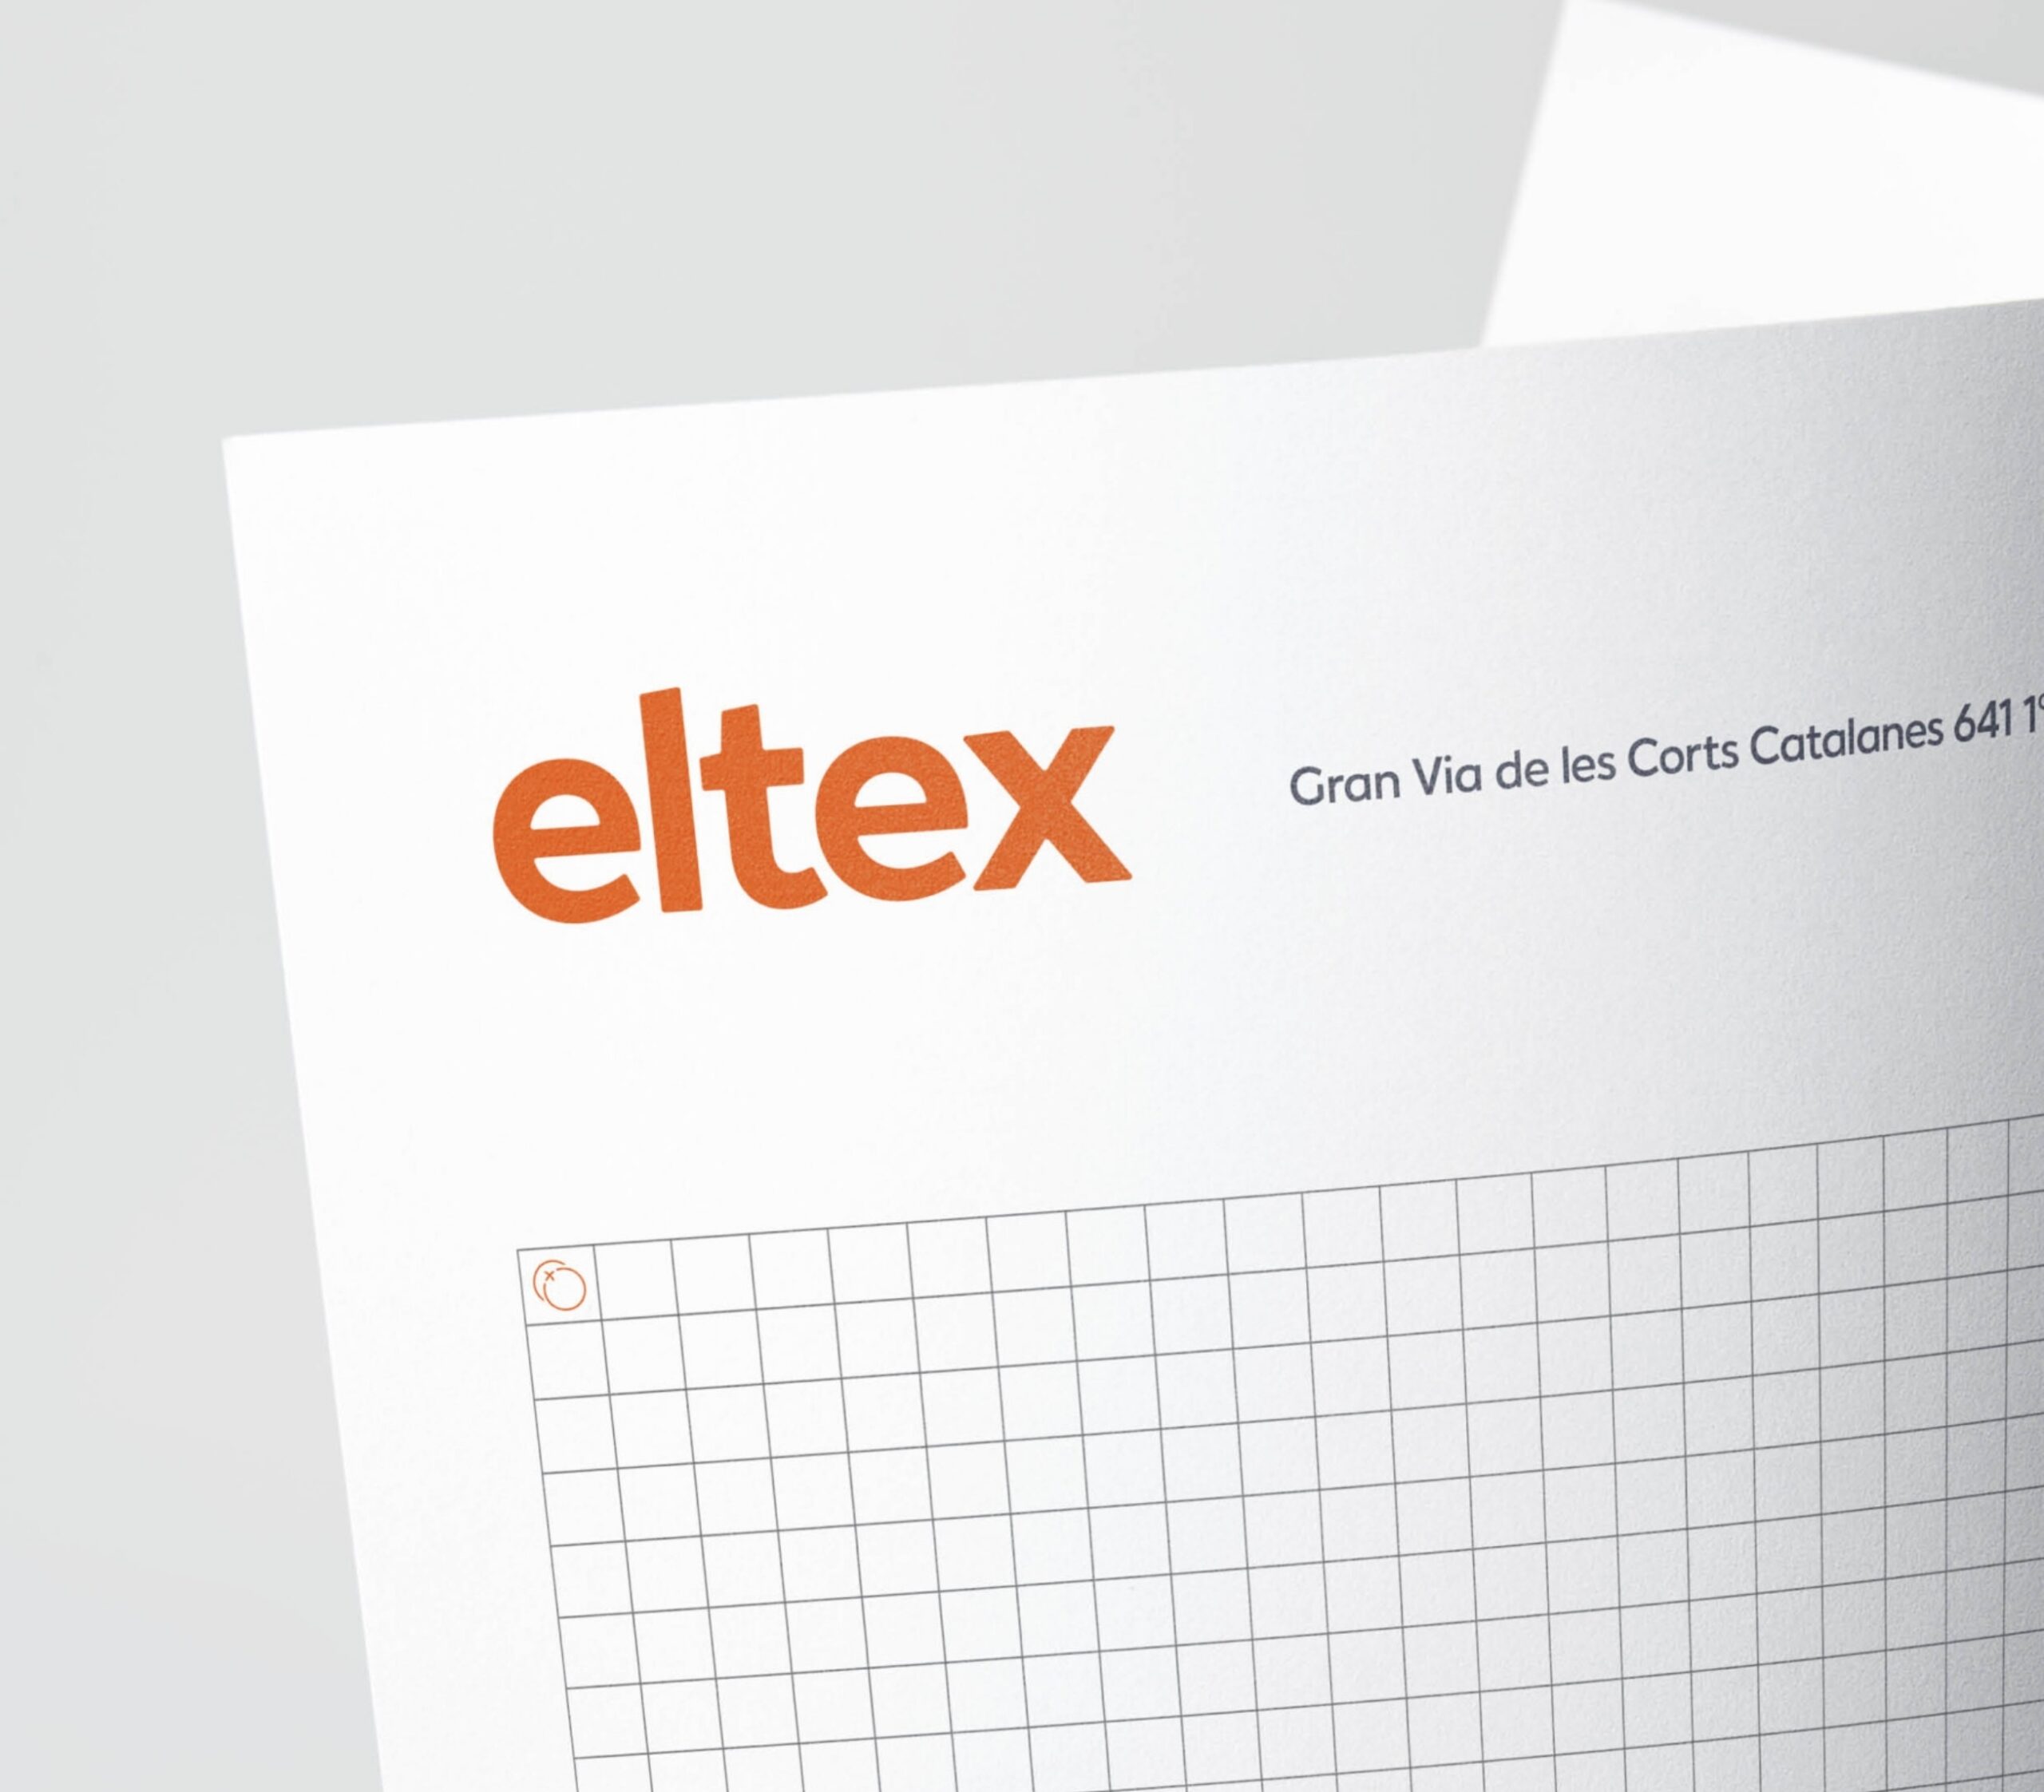 ELTEX Concept WEB 01 015 1804x0